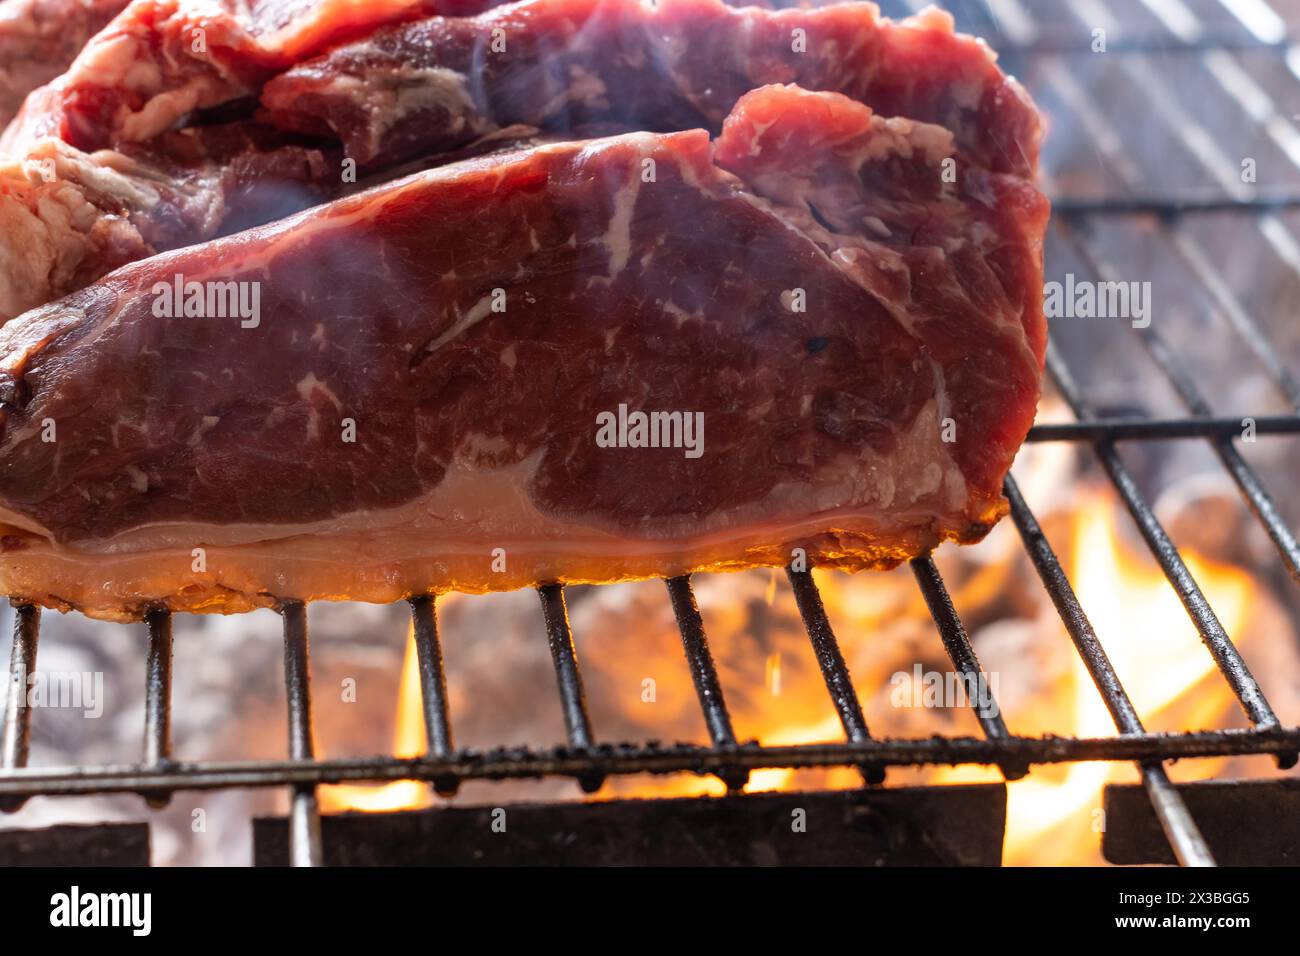 Nahaufnahme von rohen Fleischstücken, die wie Steaks auf einem Grill geschnitten sind, unter dem das Feuer brennt Stockfoto